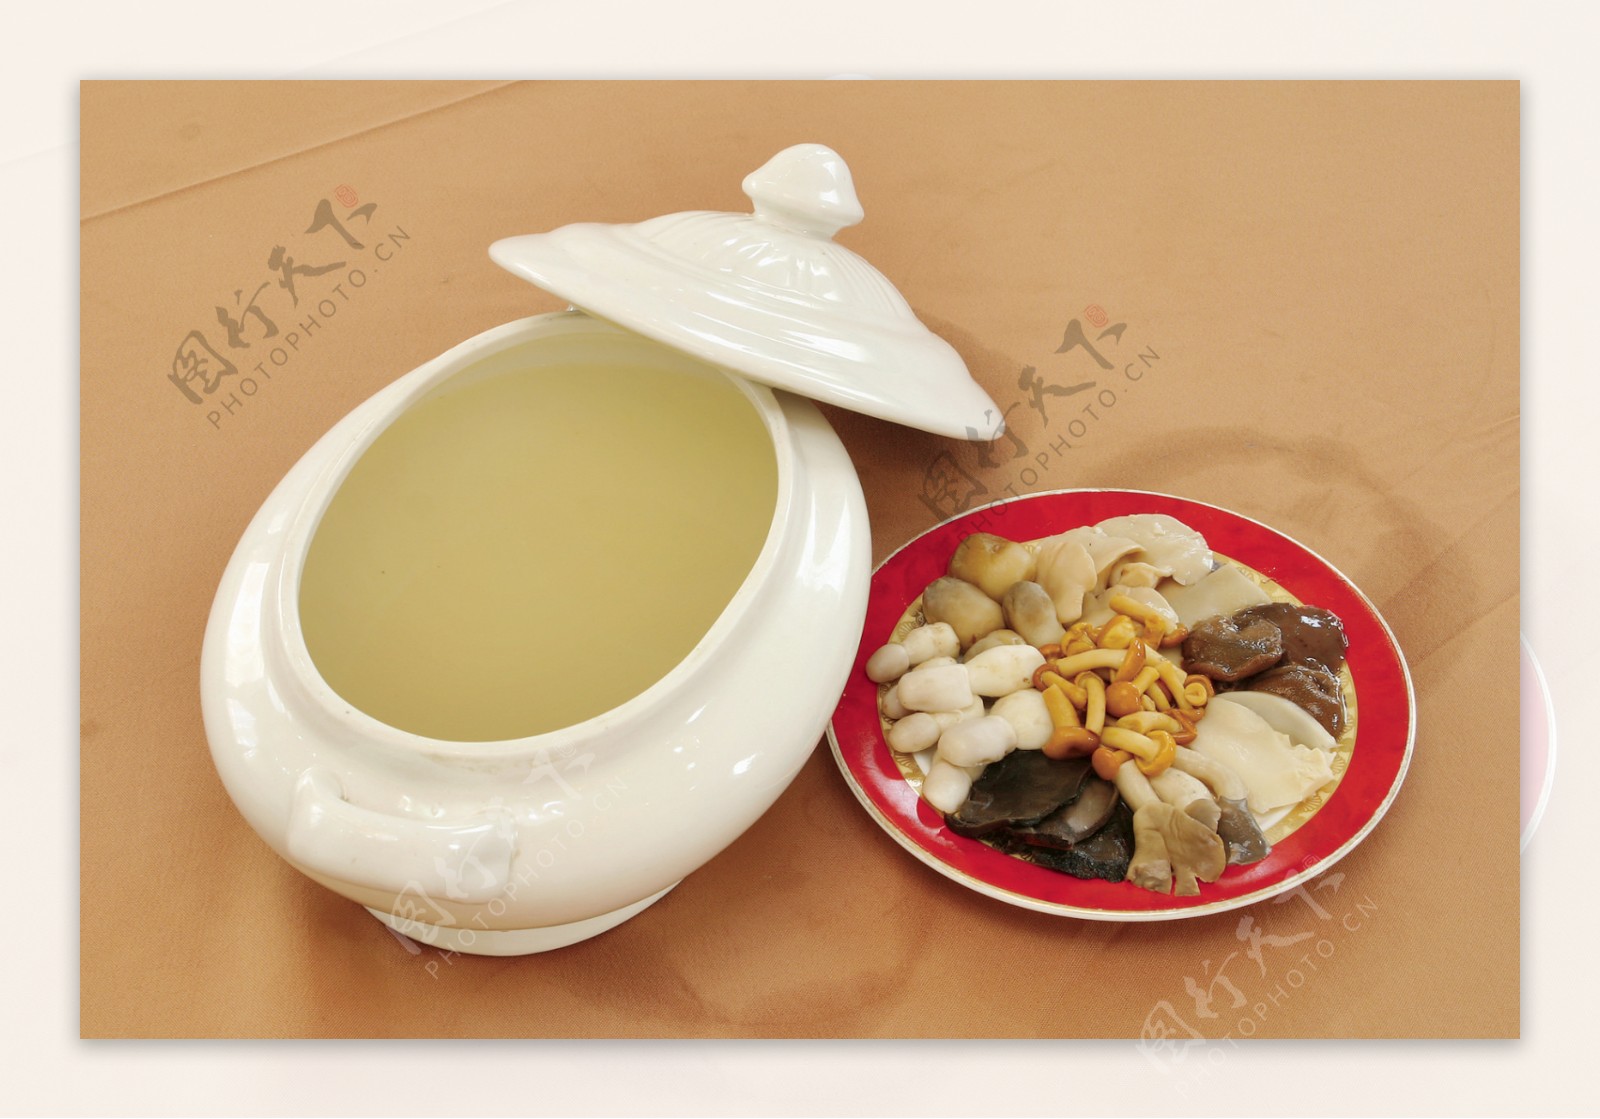 清炖健康菇菌汤